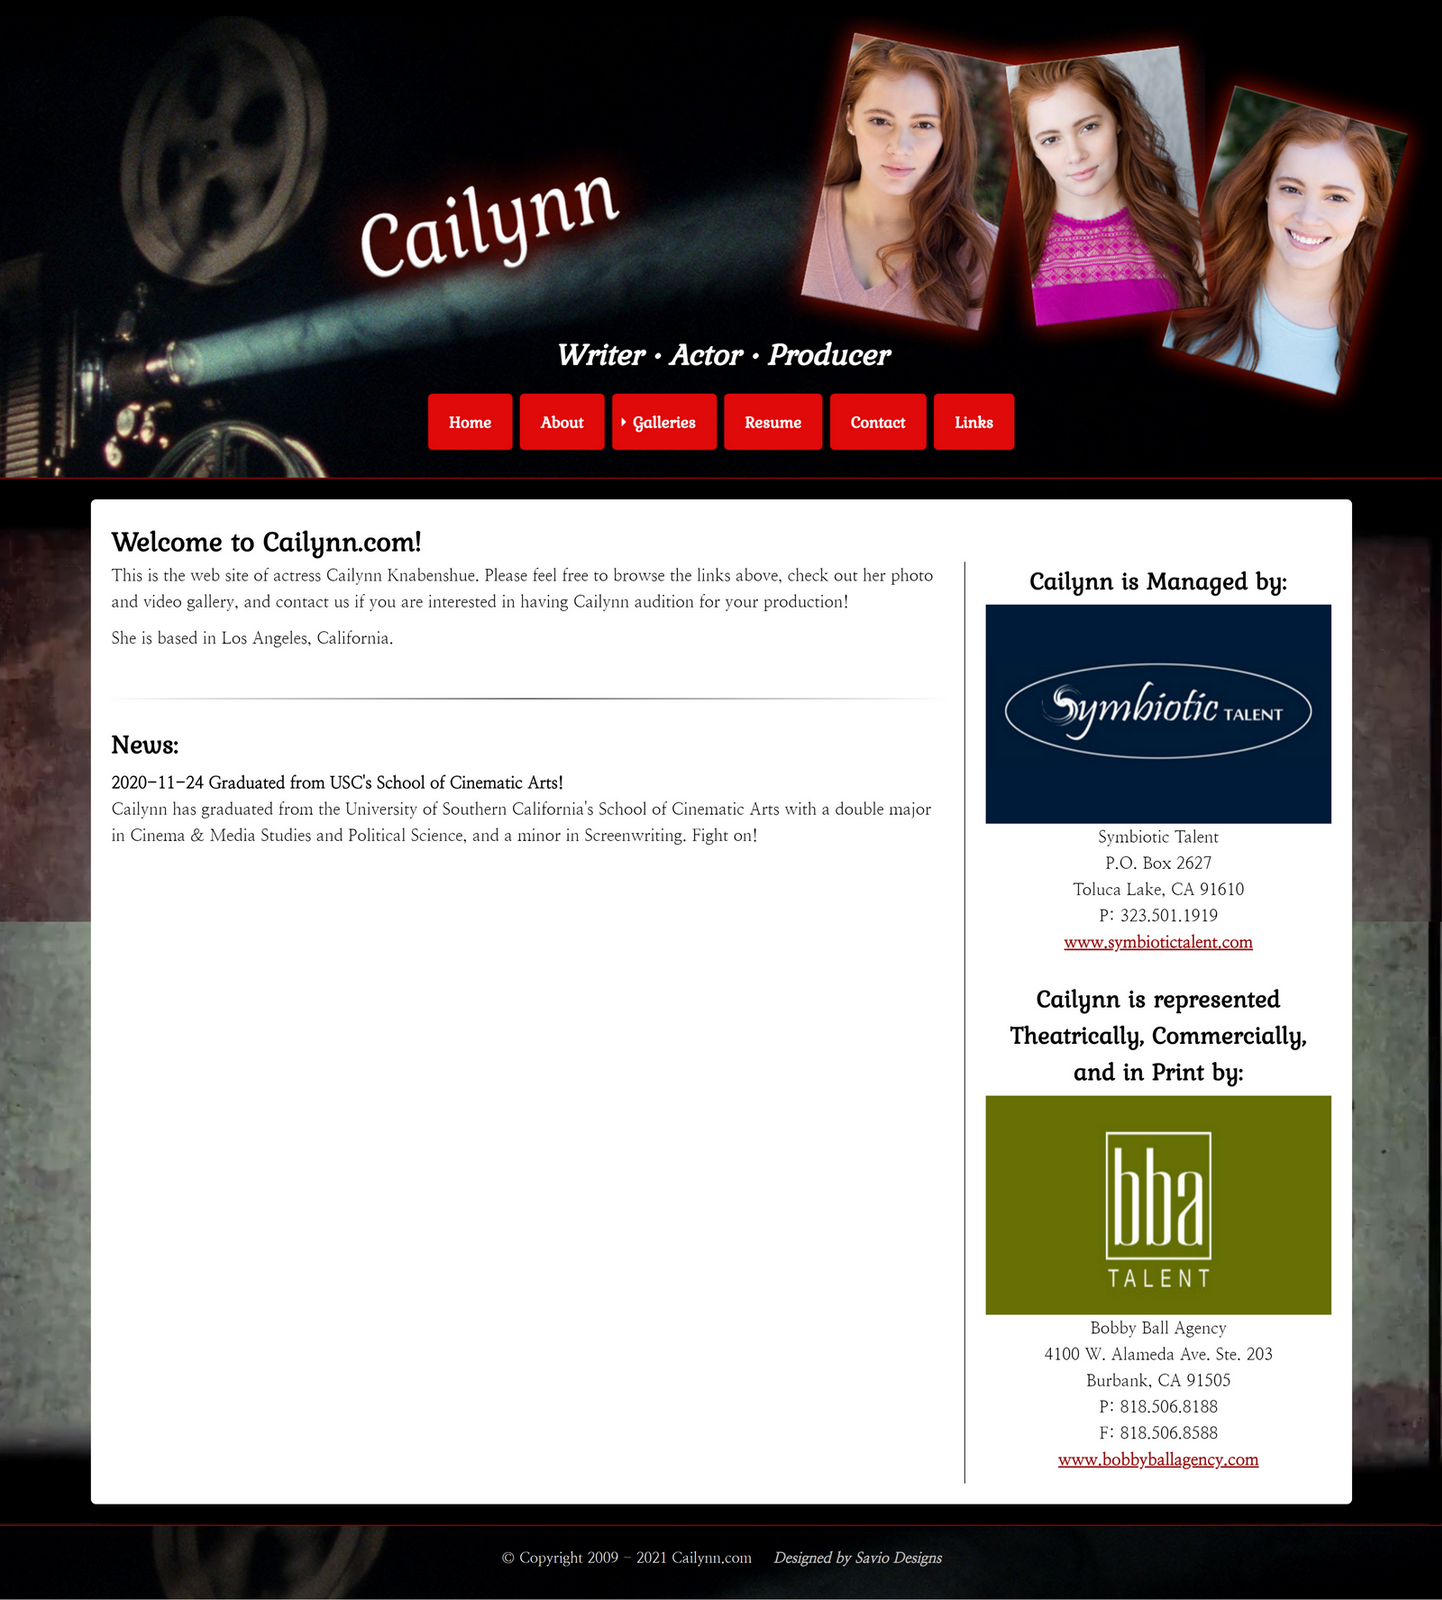 Cailynn.com Redesign now live!